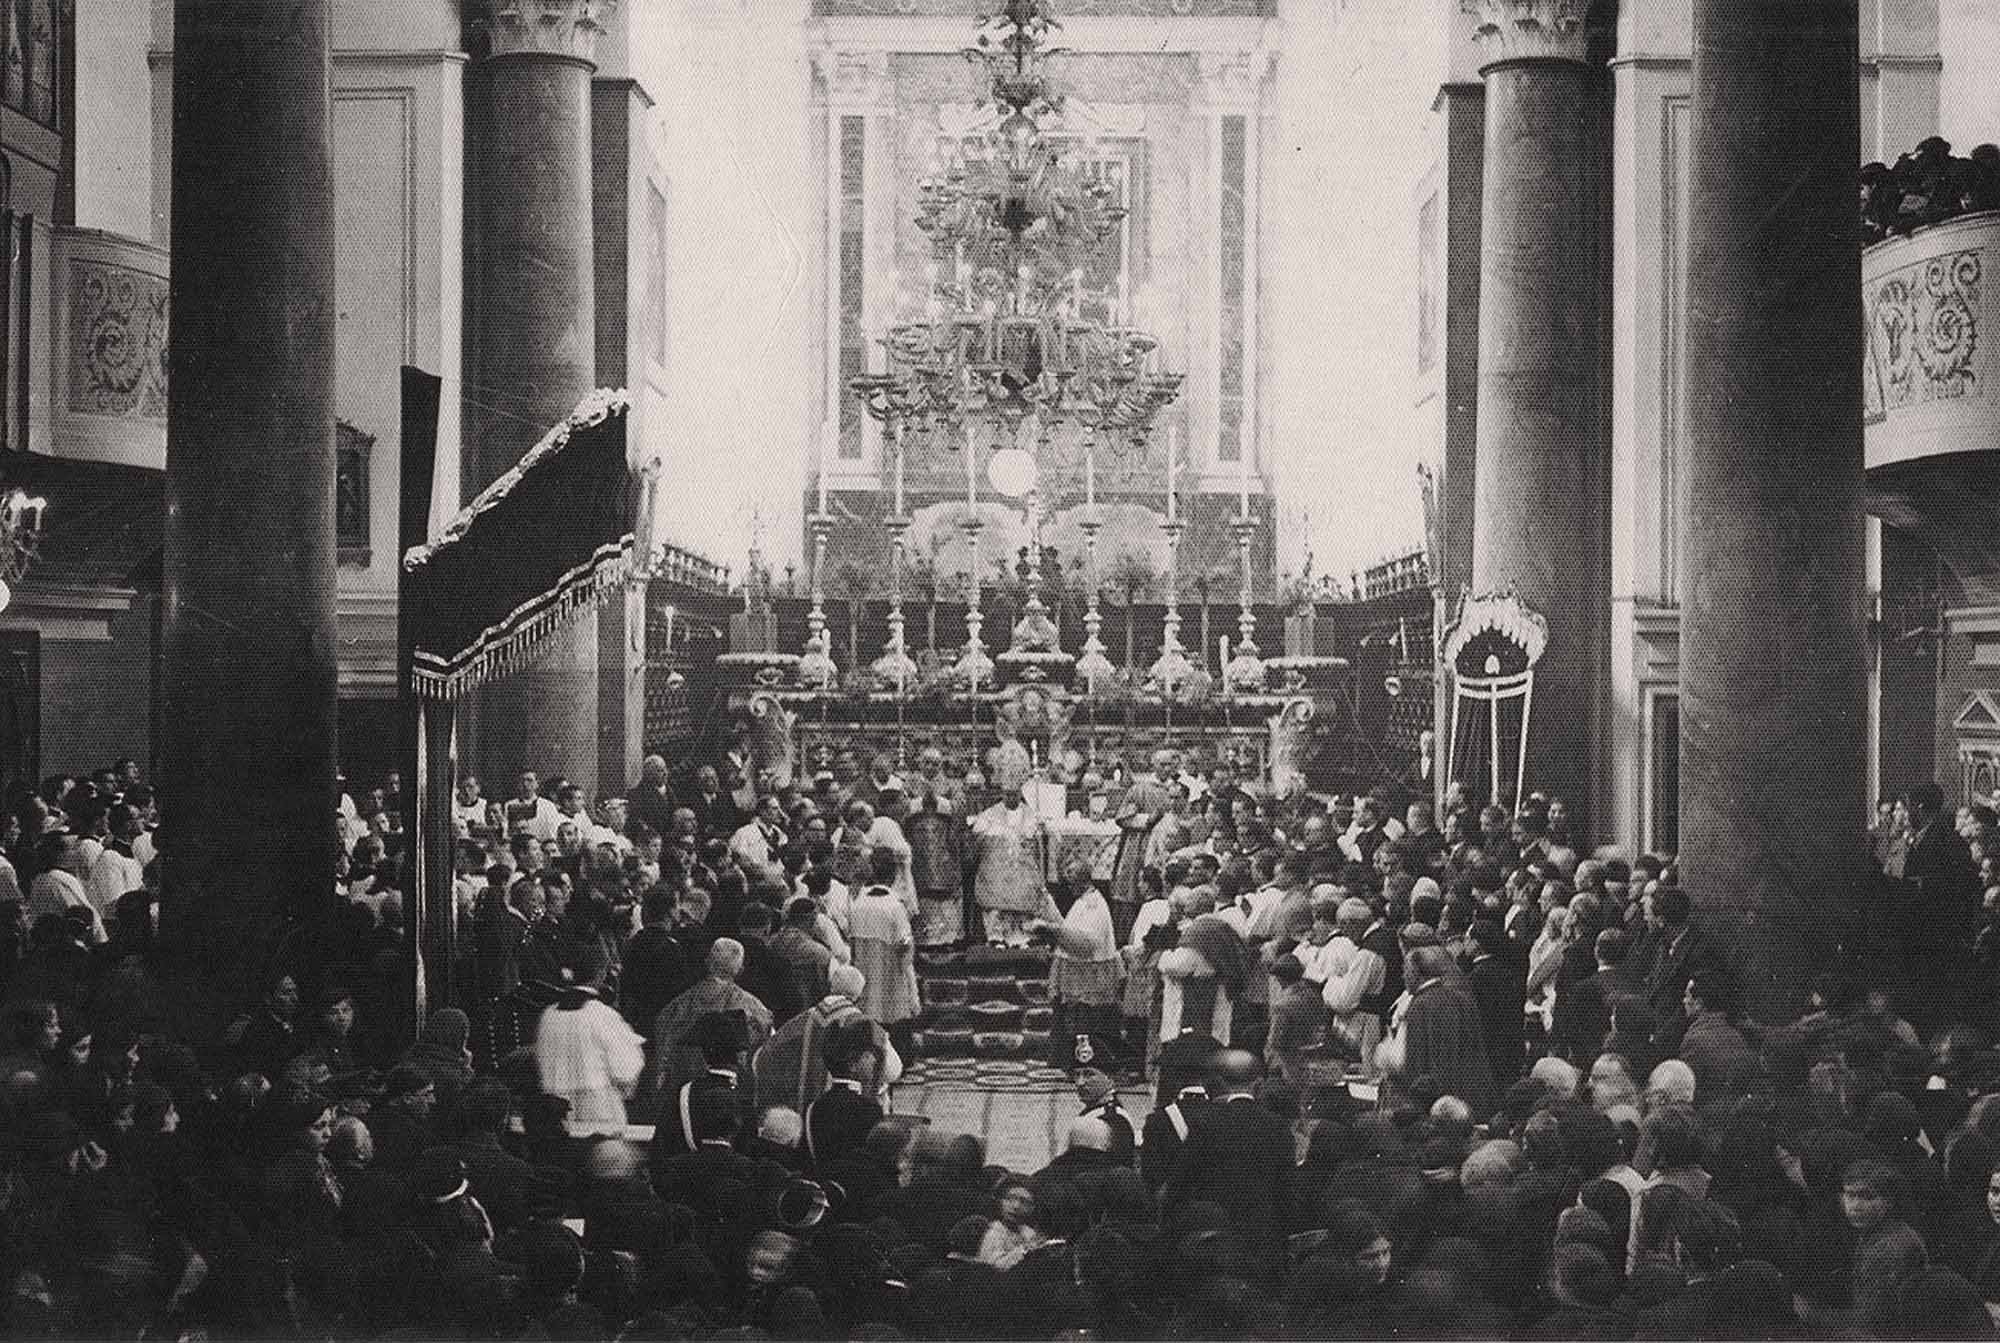 Festa in S. Nicola nei primi decenni del Novecento (foto archivio G.Musci-F.Inchingolo)